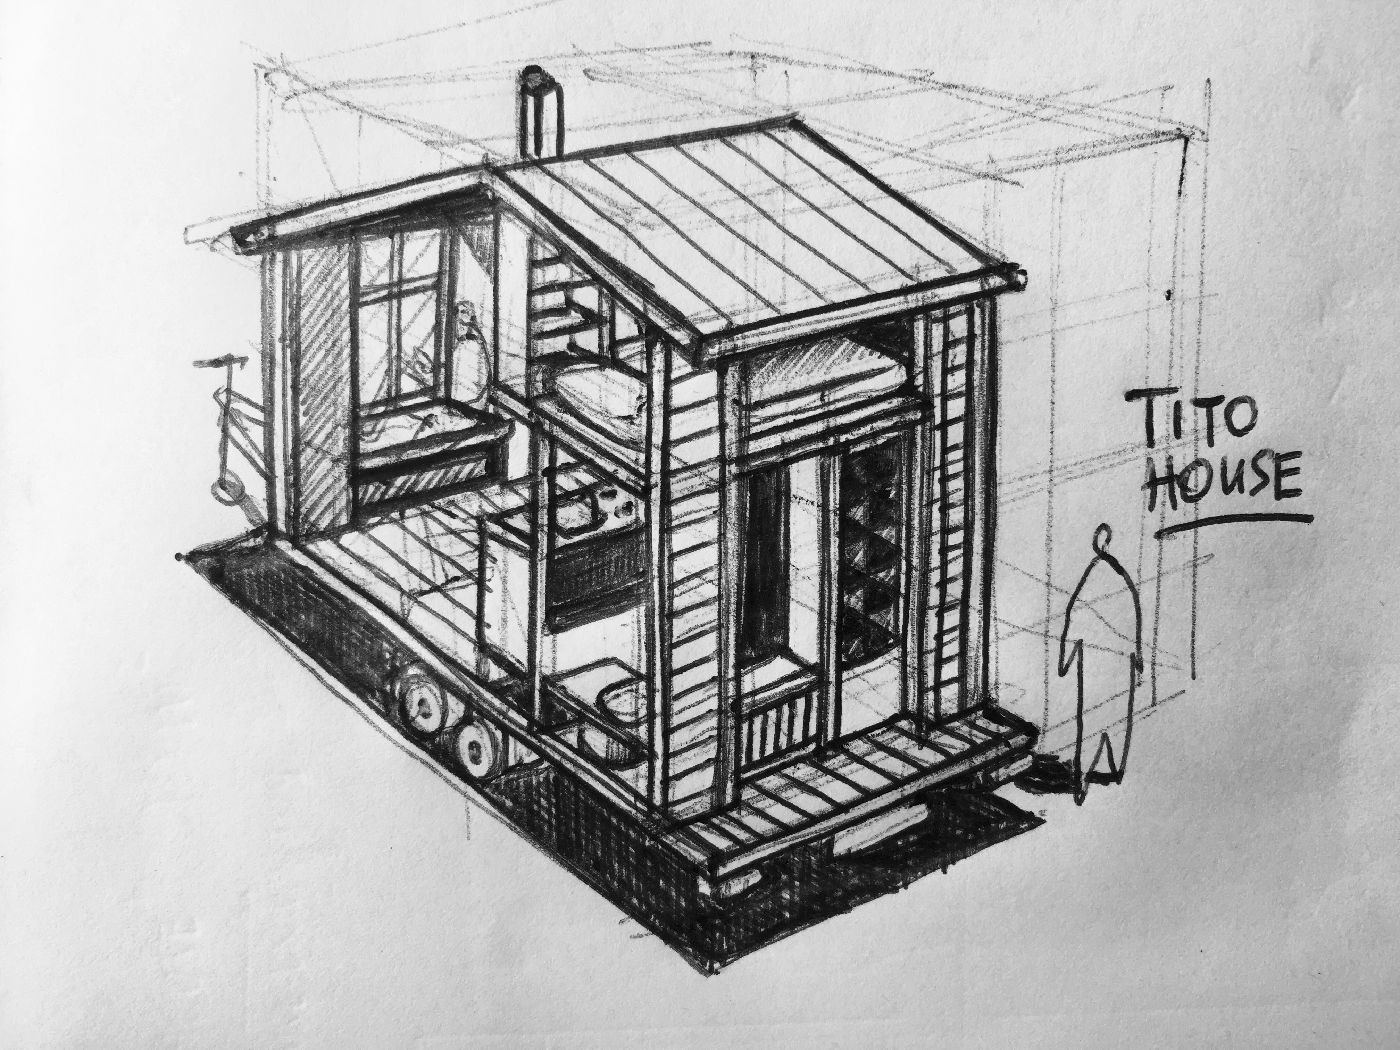 Tito House sketch by Van Bo Le-Mentzel